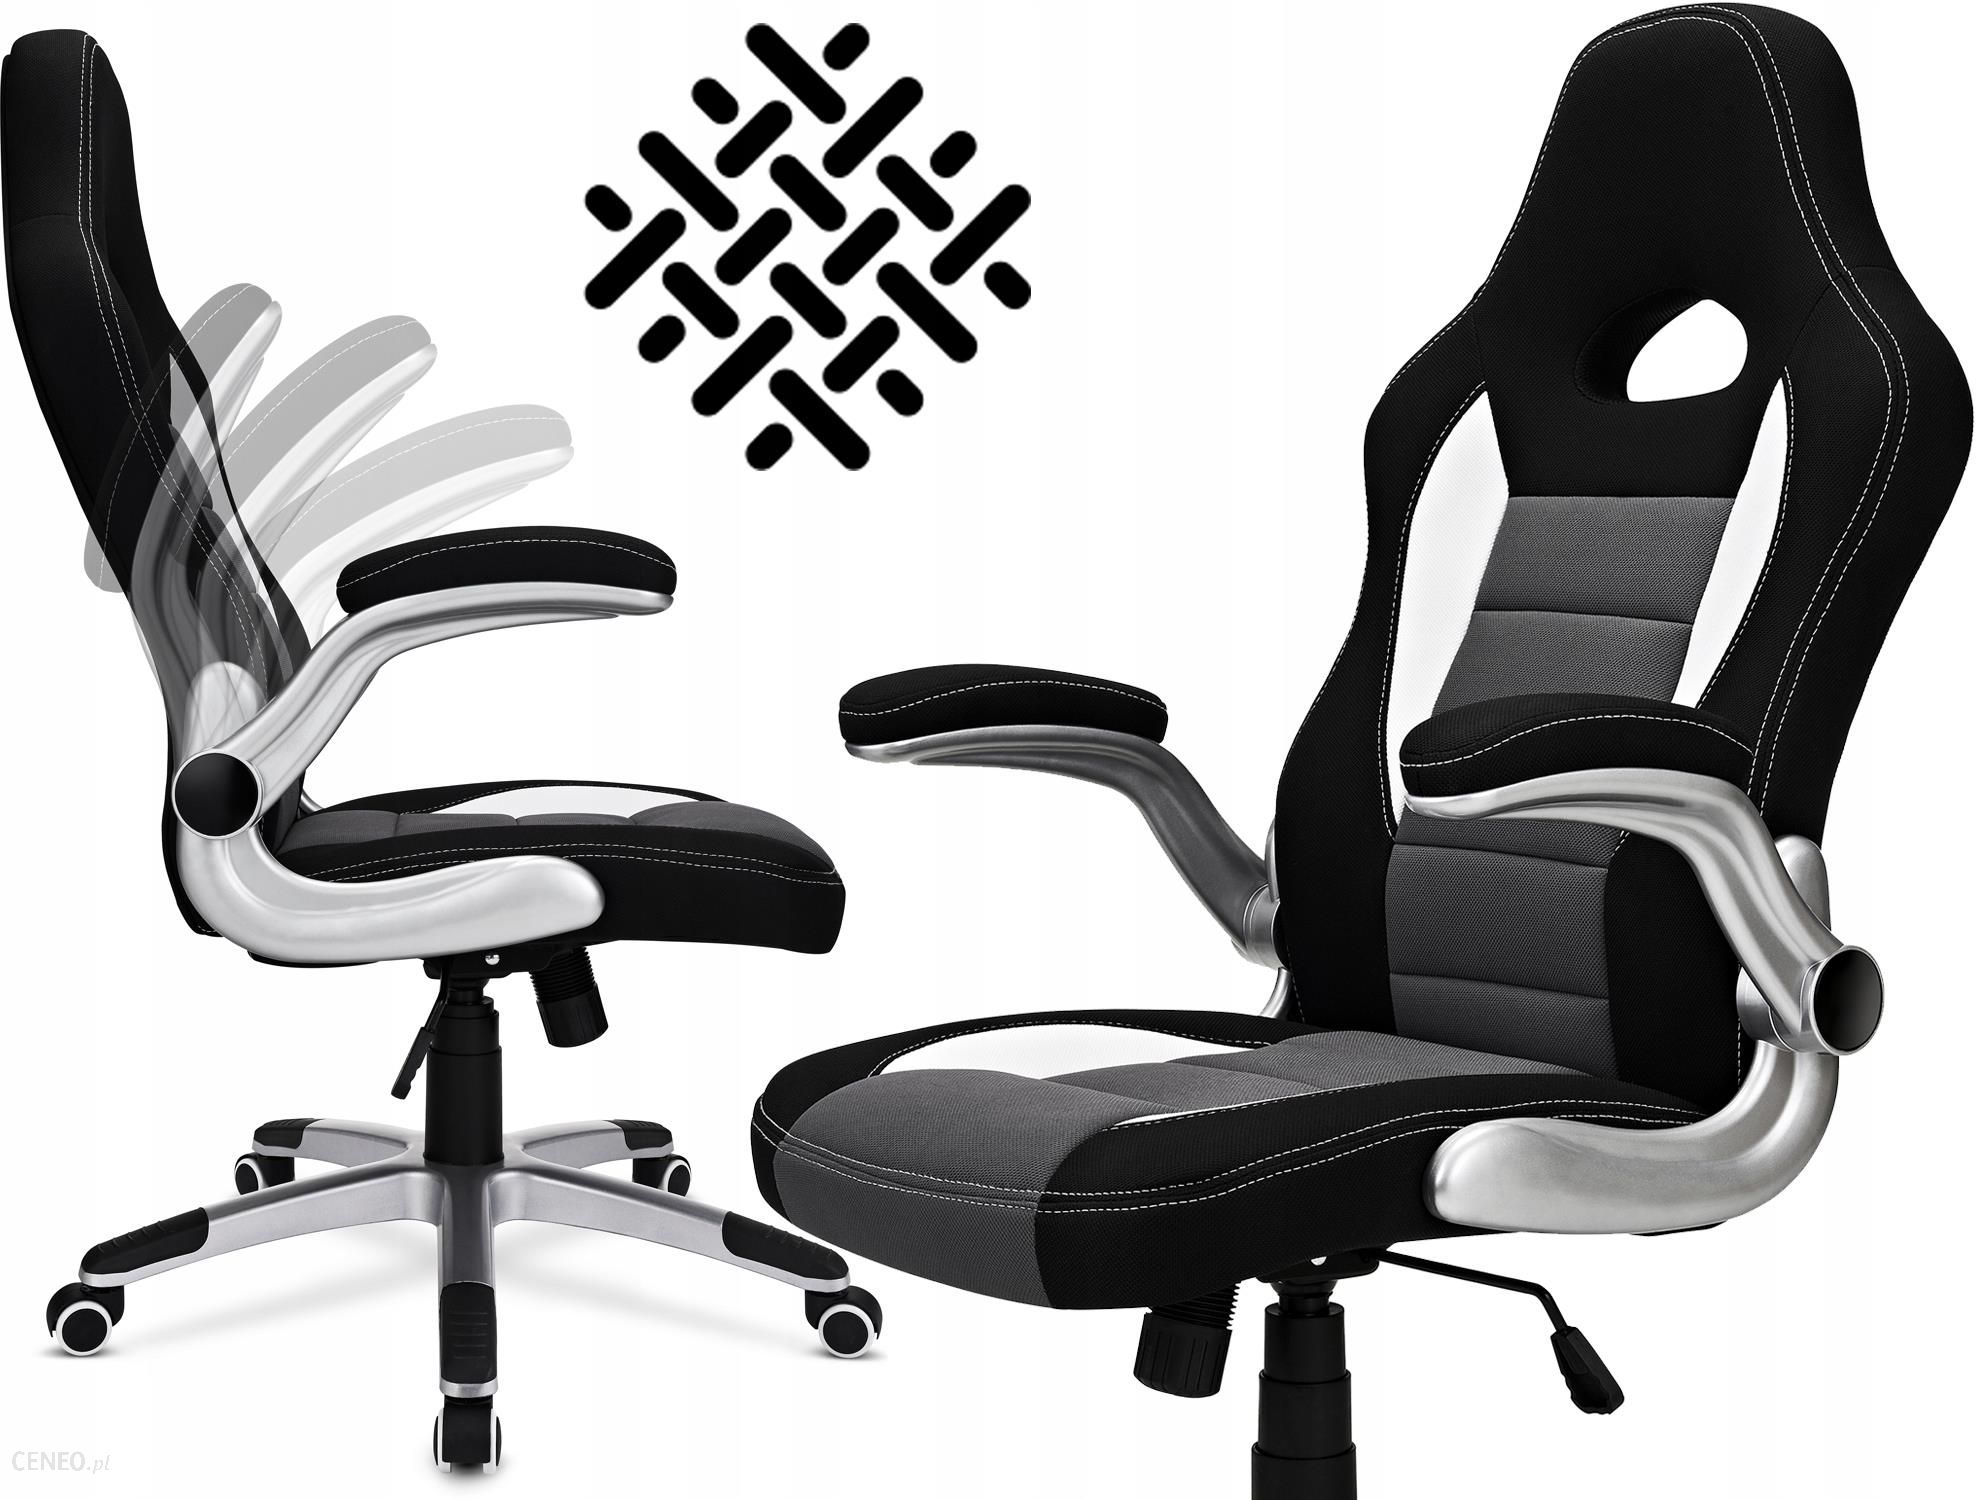 Fotel Biurowy Obrotowy Krzeslo Biurowe Materialowy Ceny I Opinie Ceneo Pl